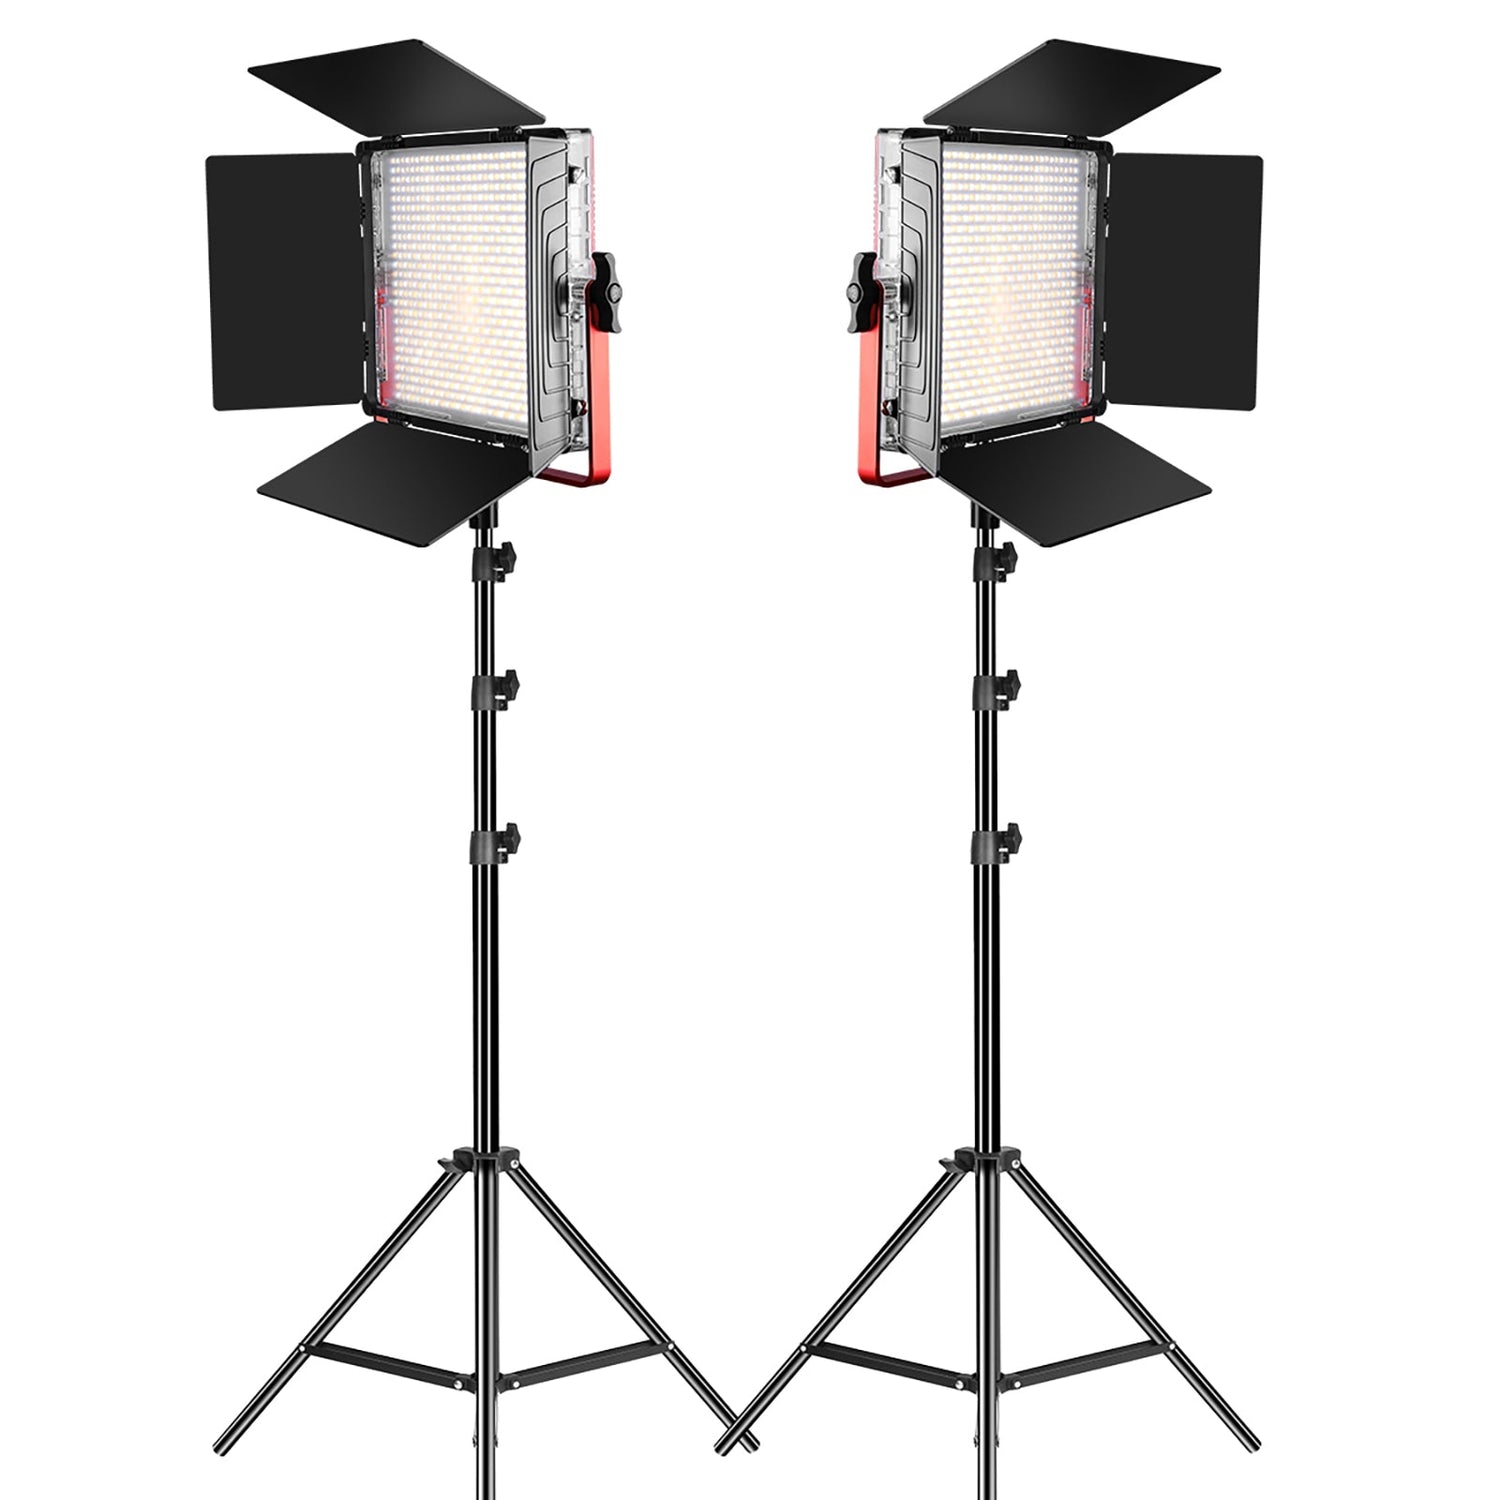 gvm mb832 led studio video light bi color 2 light kit - GVMLED